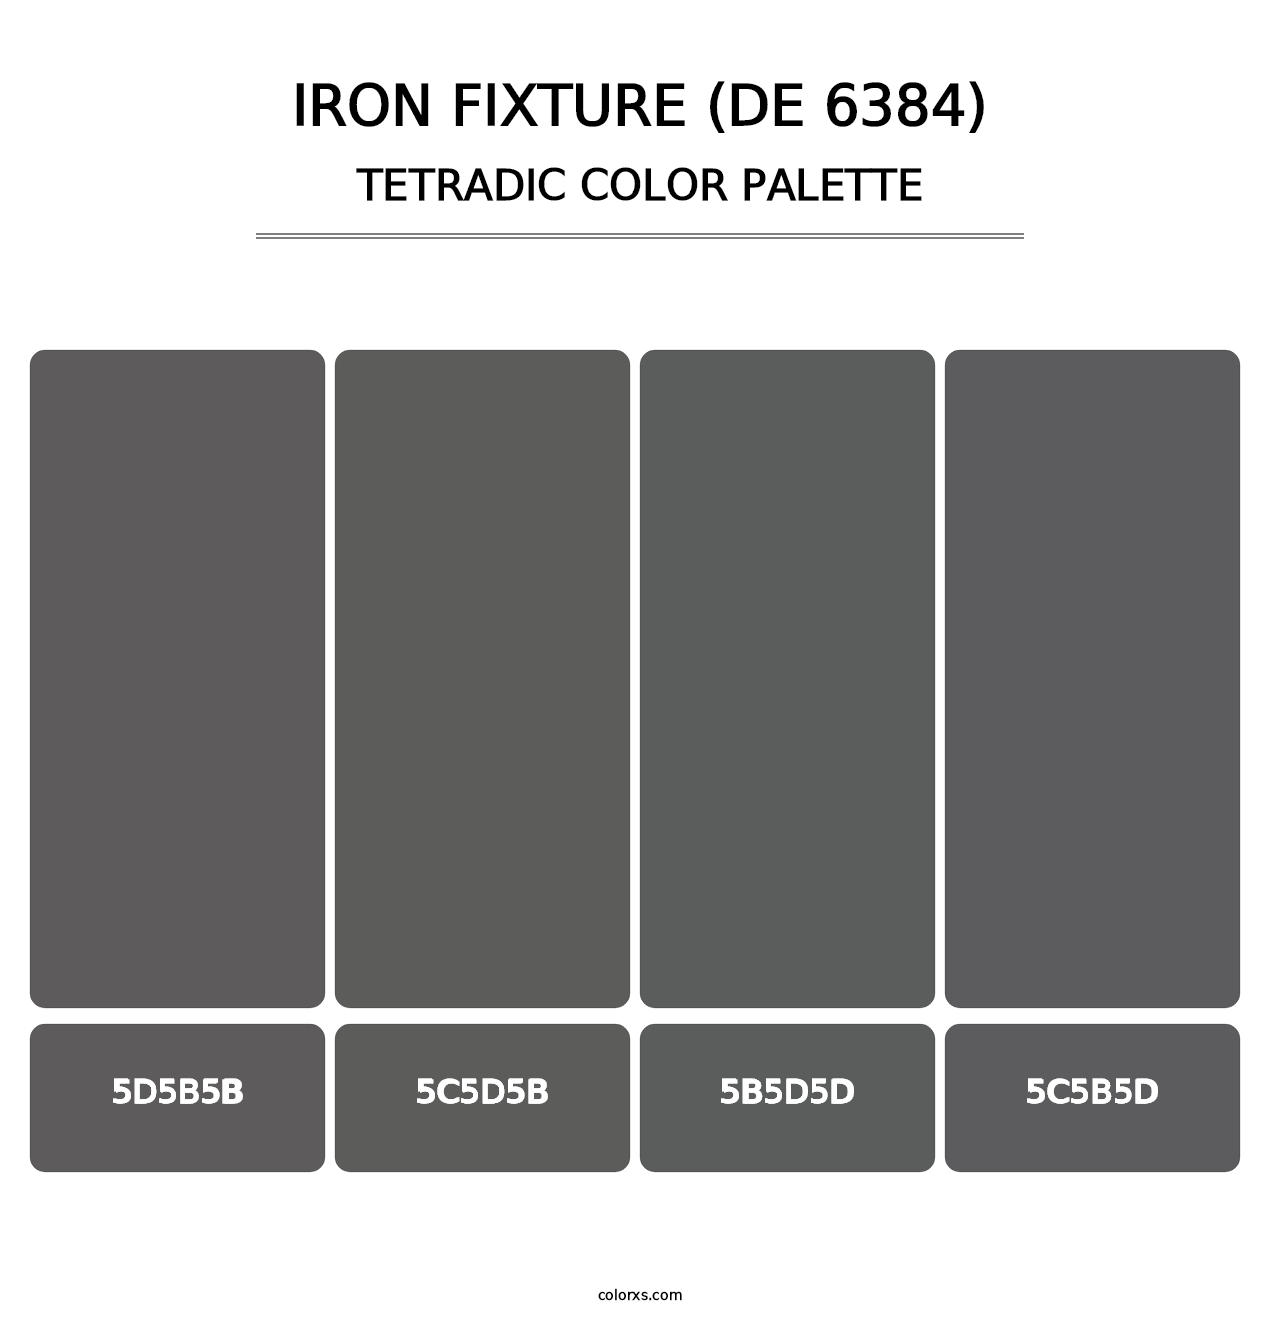 Iron Fixture (DE 6384) - Tetradic Color Palette